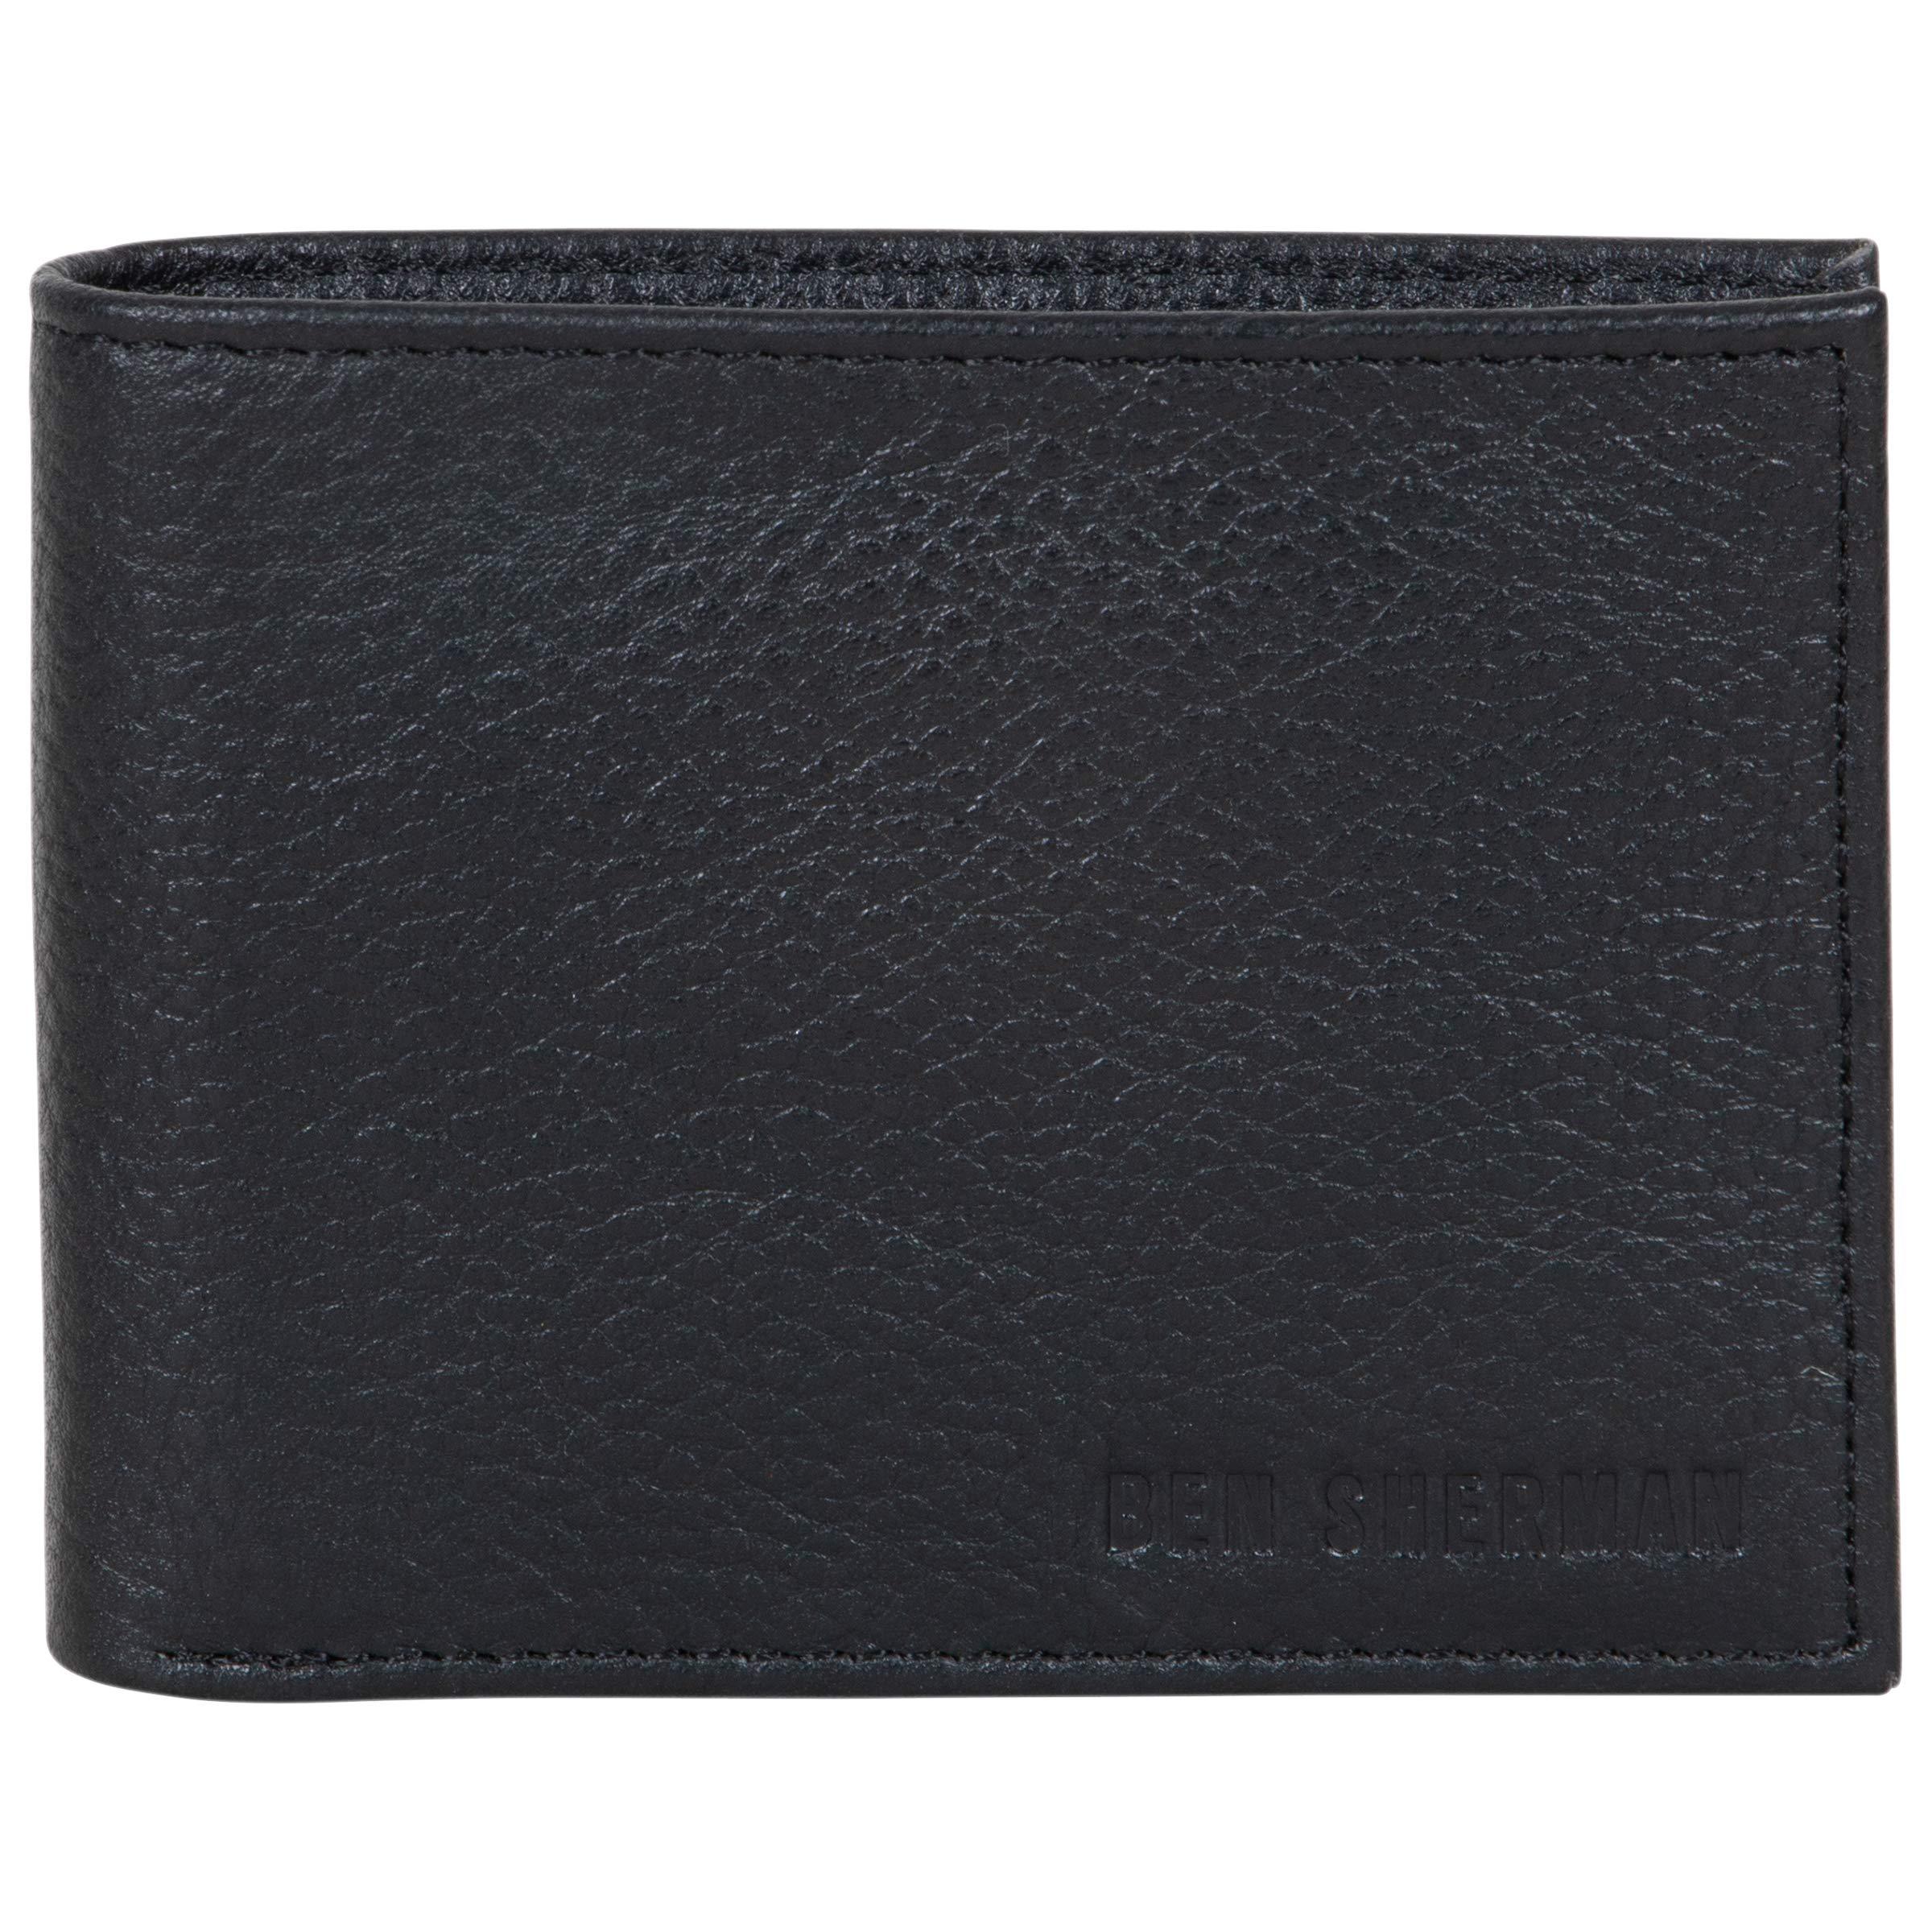 Ben Sherman Leather Bi-fold Wallet in Black - Lyst